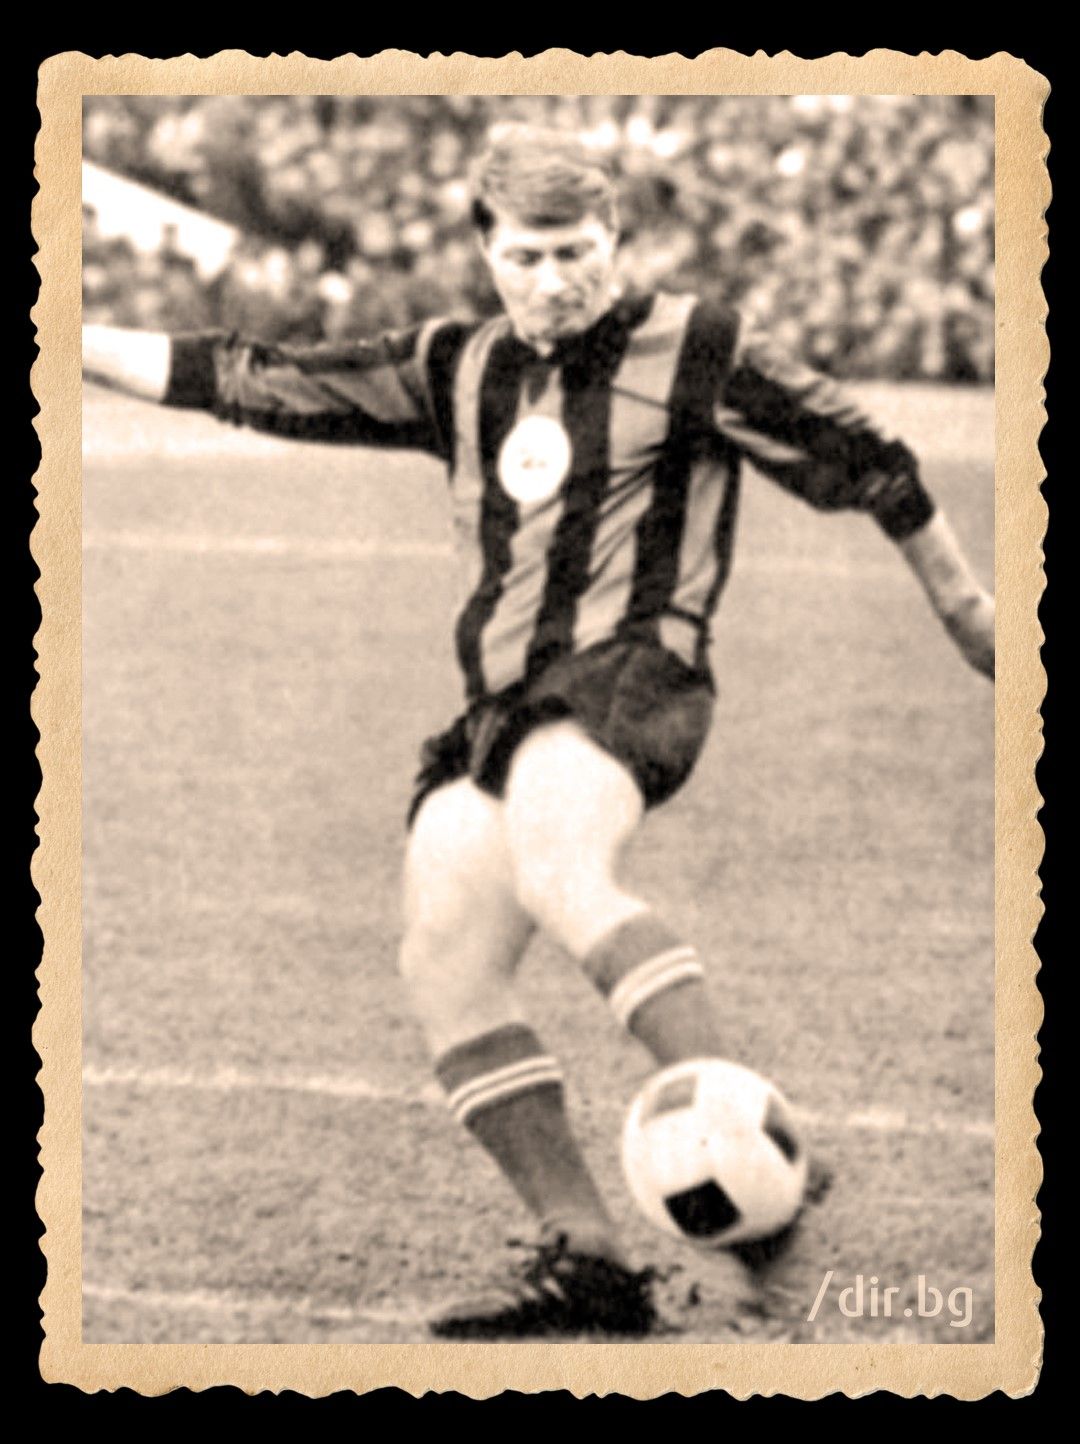 Никола Котков е легенда на софийския "Локомотив", за който   играе 12 години и участва в около 300 мача с "червено-  черната" фланелка, с която става и шампион. След   преминаването в "Левски" през 1969 г. печели титлата и със   "сините" в първия си сезон, редом с Гунди, преди съдбата да   ги остави завинаги заедно.